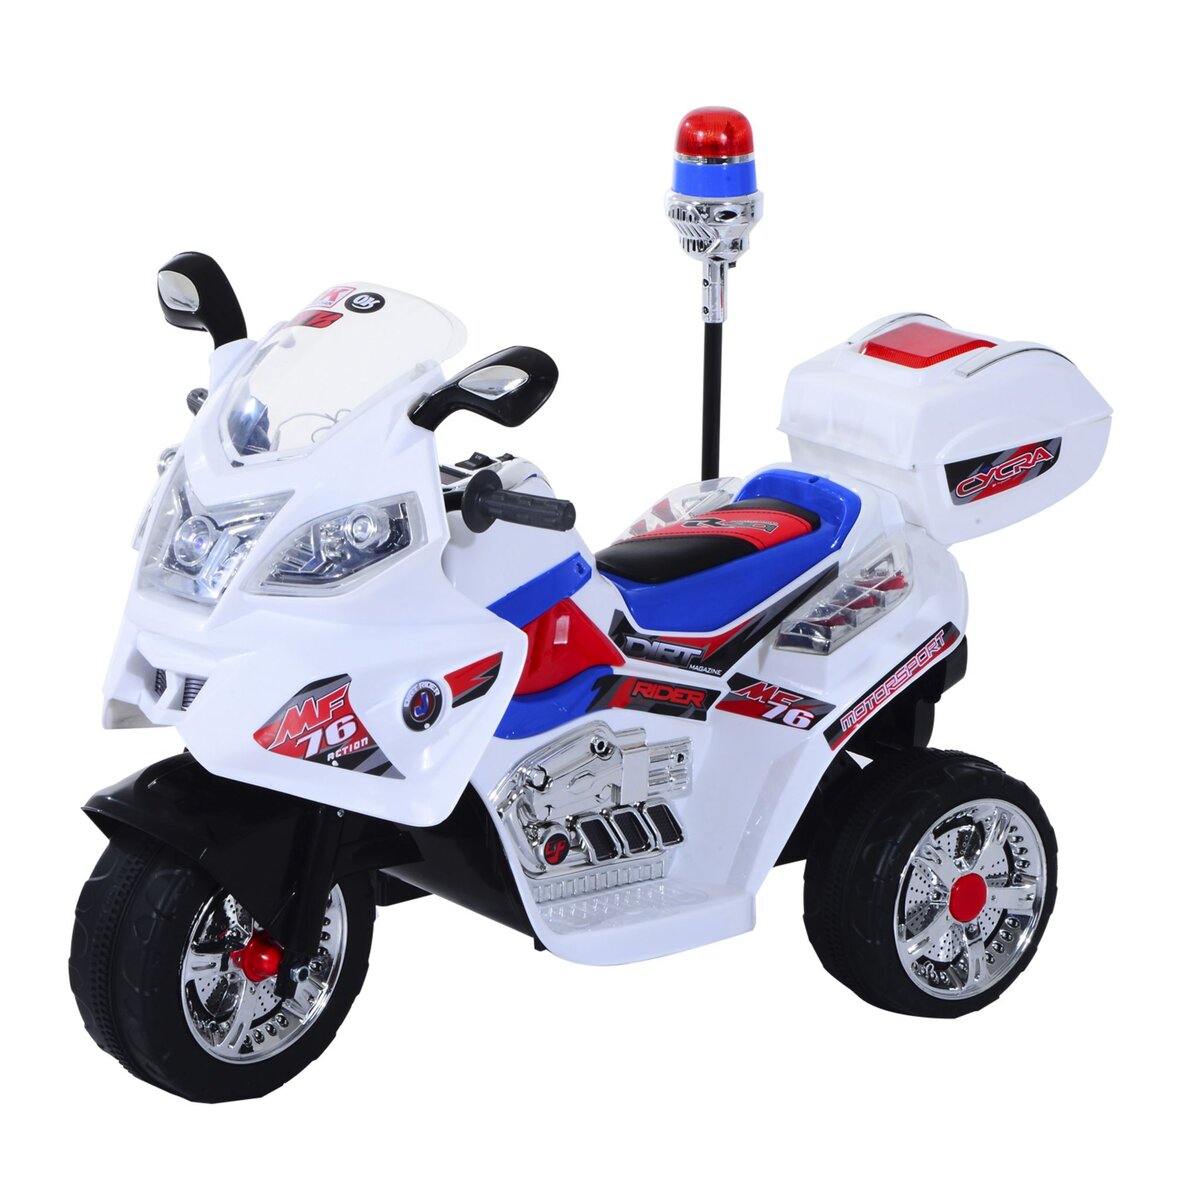 Moto électrique pour enfant rouge Homcom